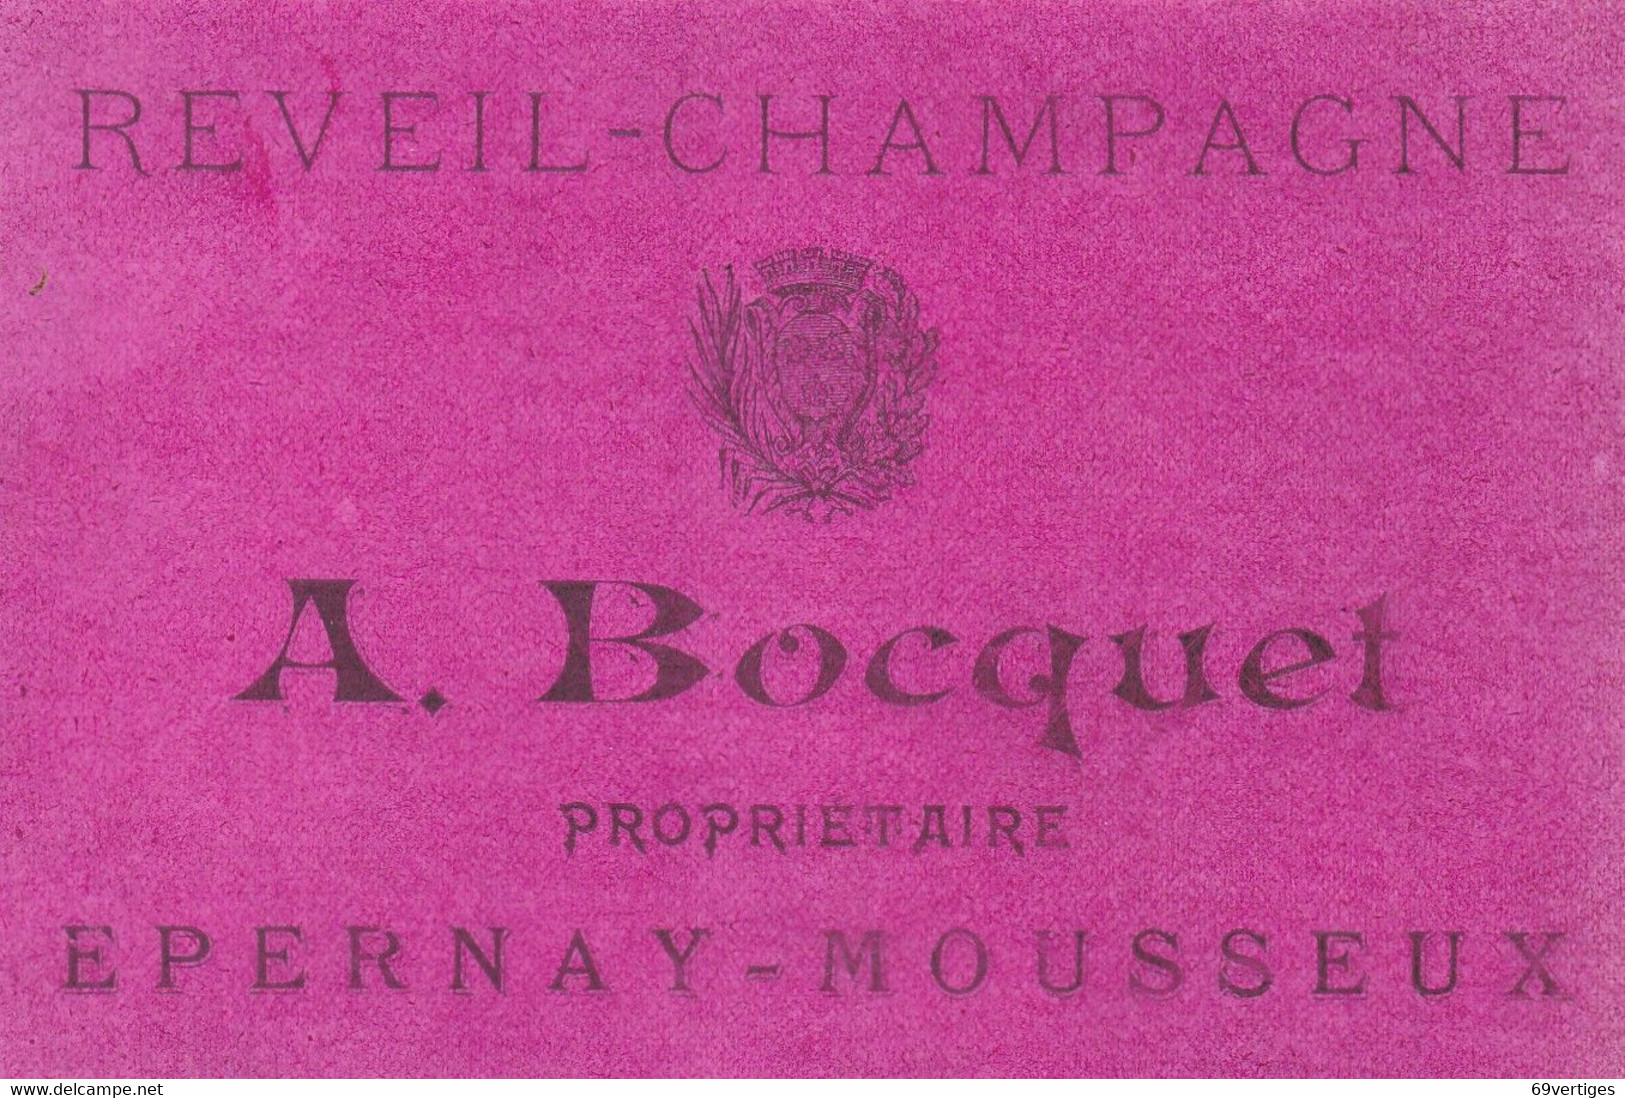 "REVEIL CHAMPAGNE", Epernay Mousseux, A.Bocquet, Propriétaire - Champagne